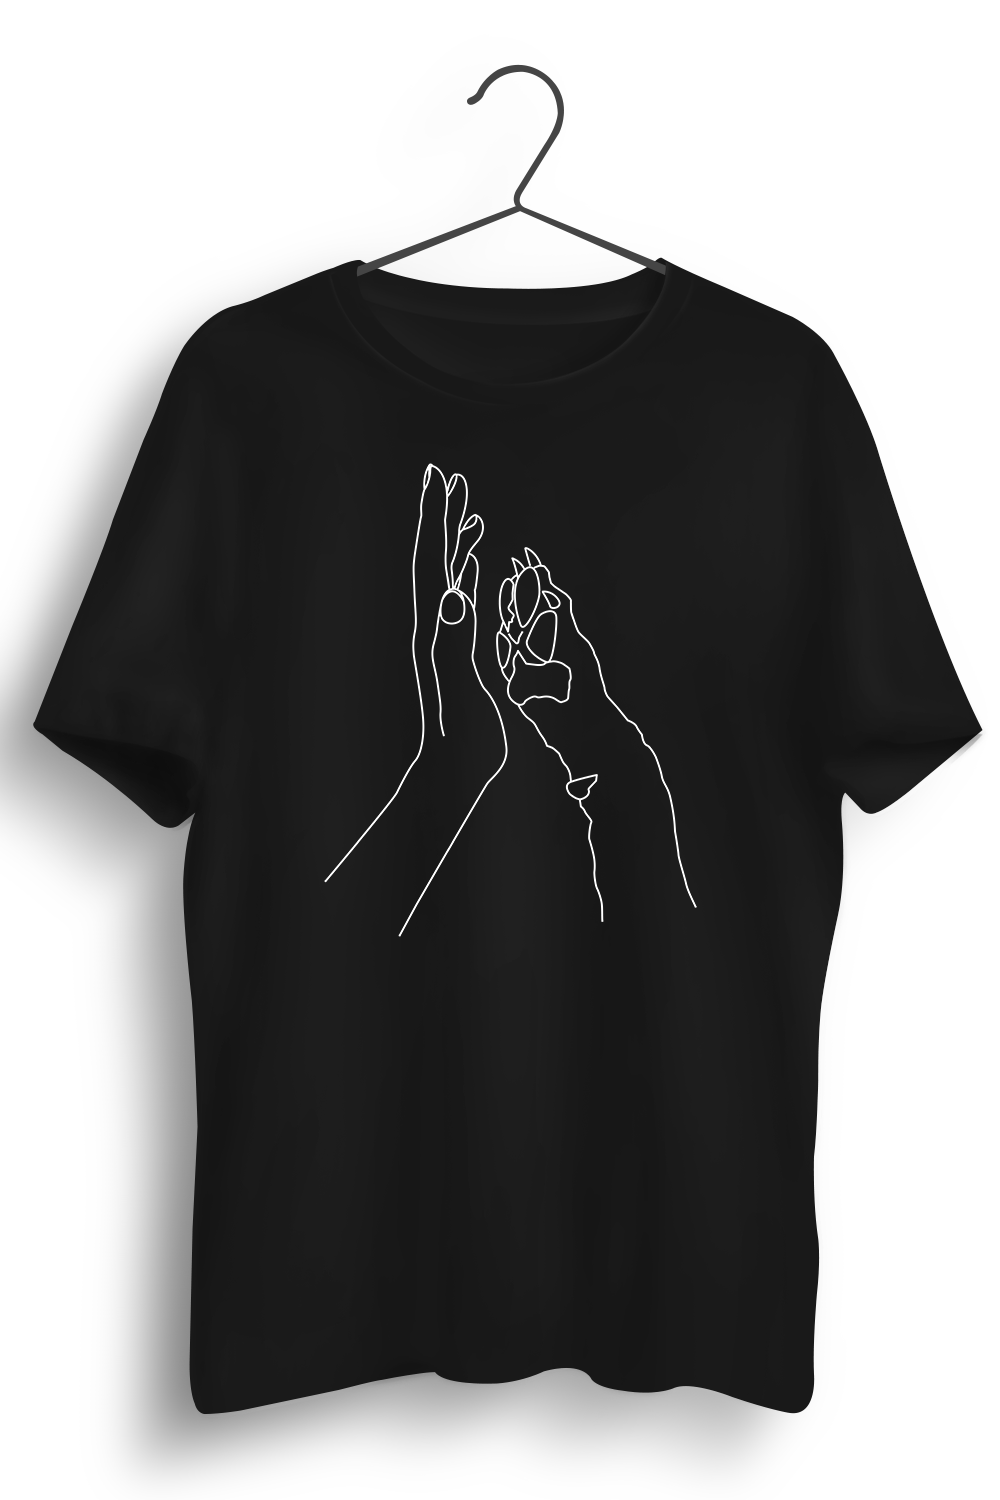 BFF Graphic Printed Black Tshirt